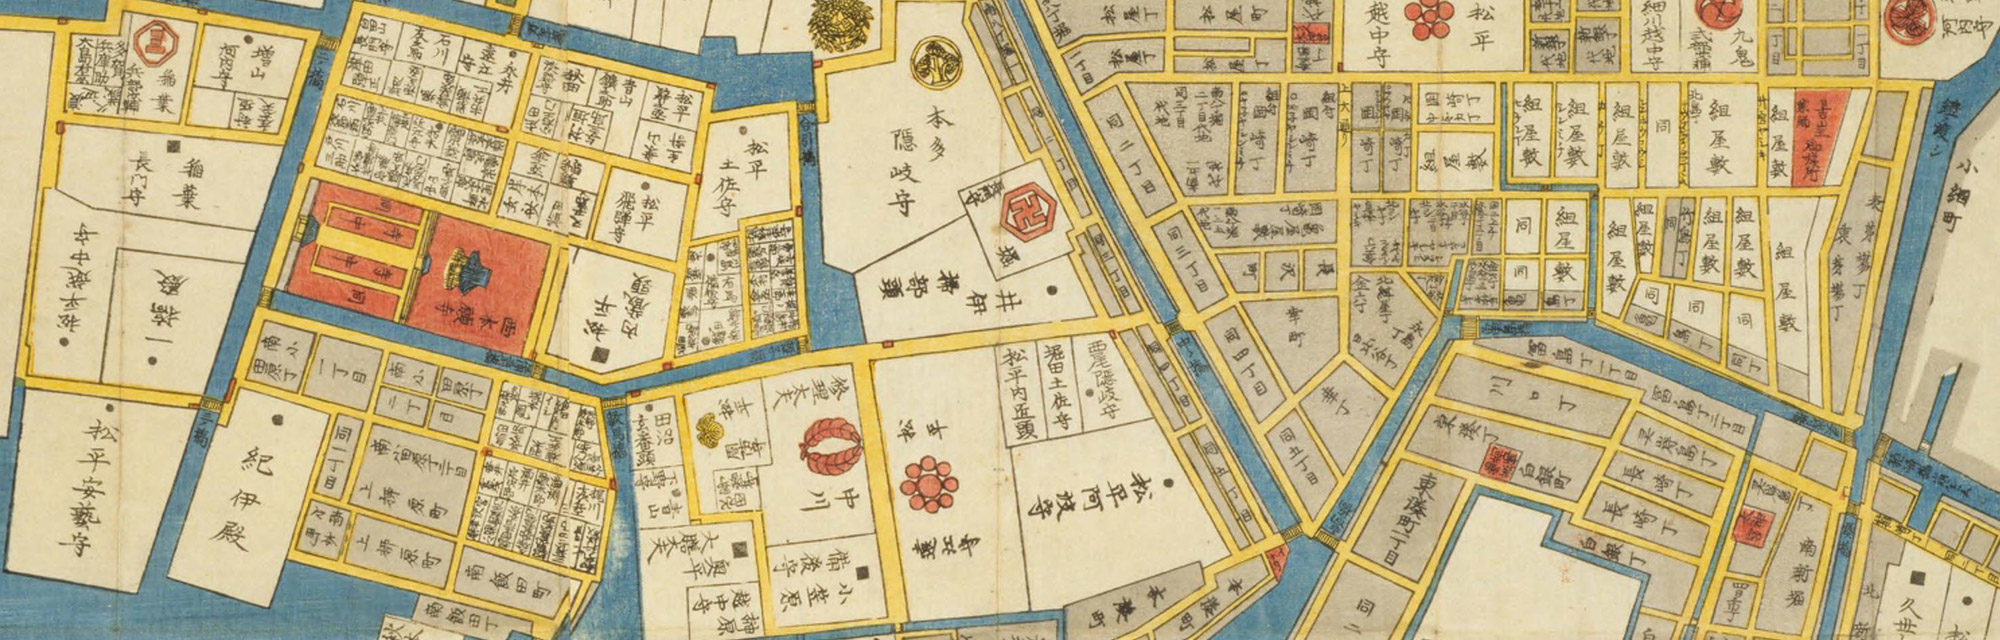 Southern Nihonbashi Map